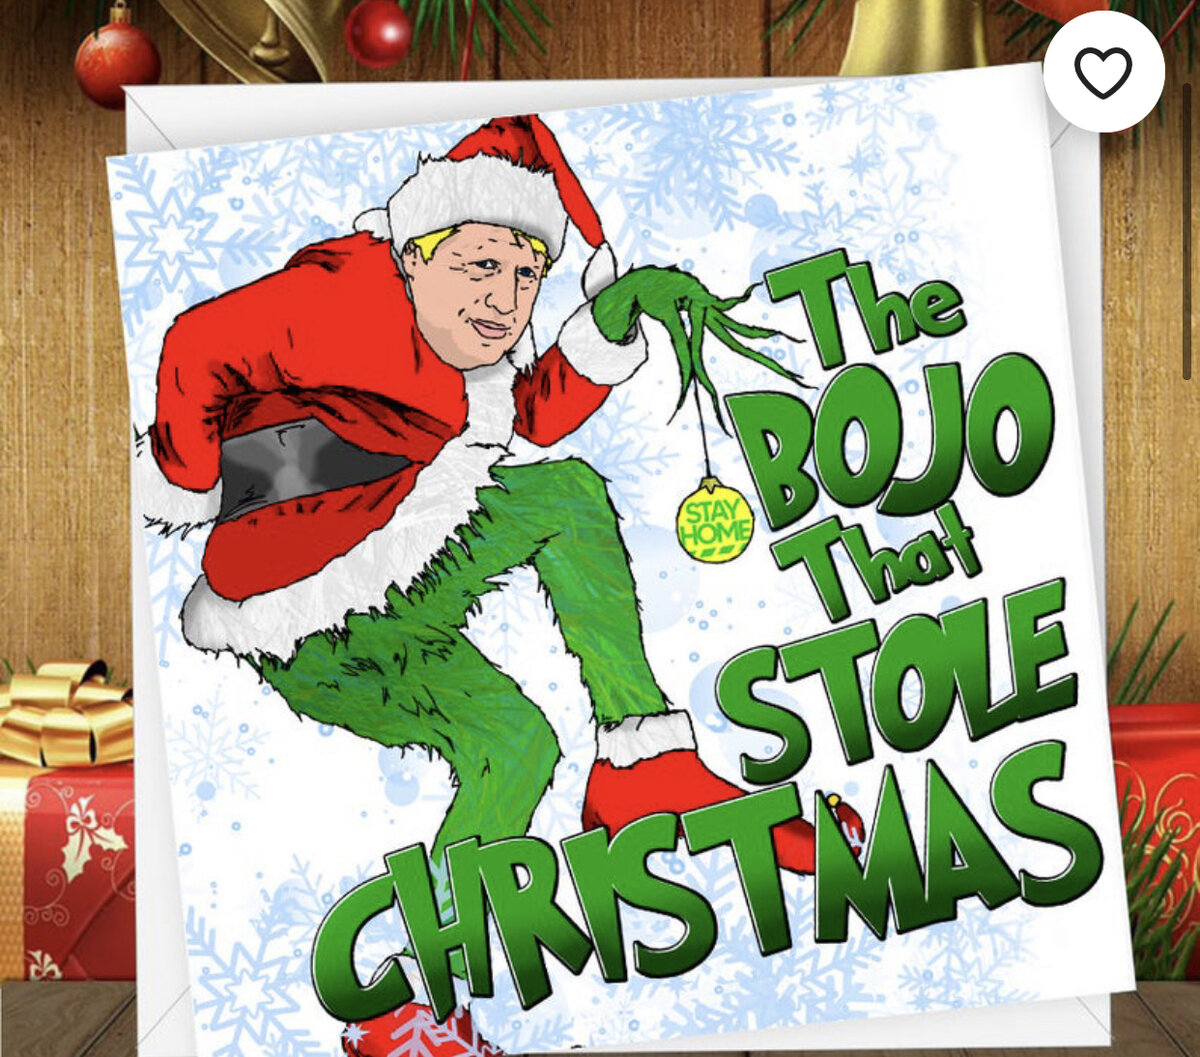 И ещё одна поздравительная открытка «Бо. Джо., который украл Рождество». Etsy.com